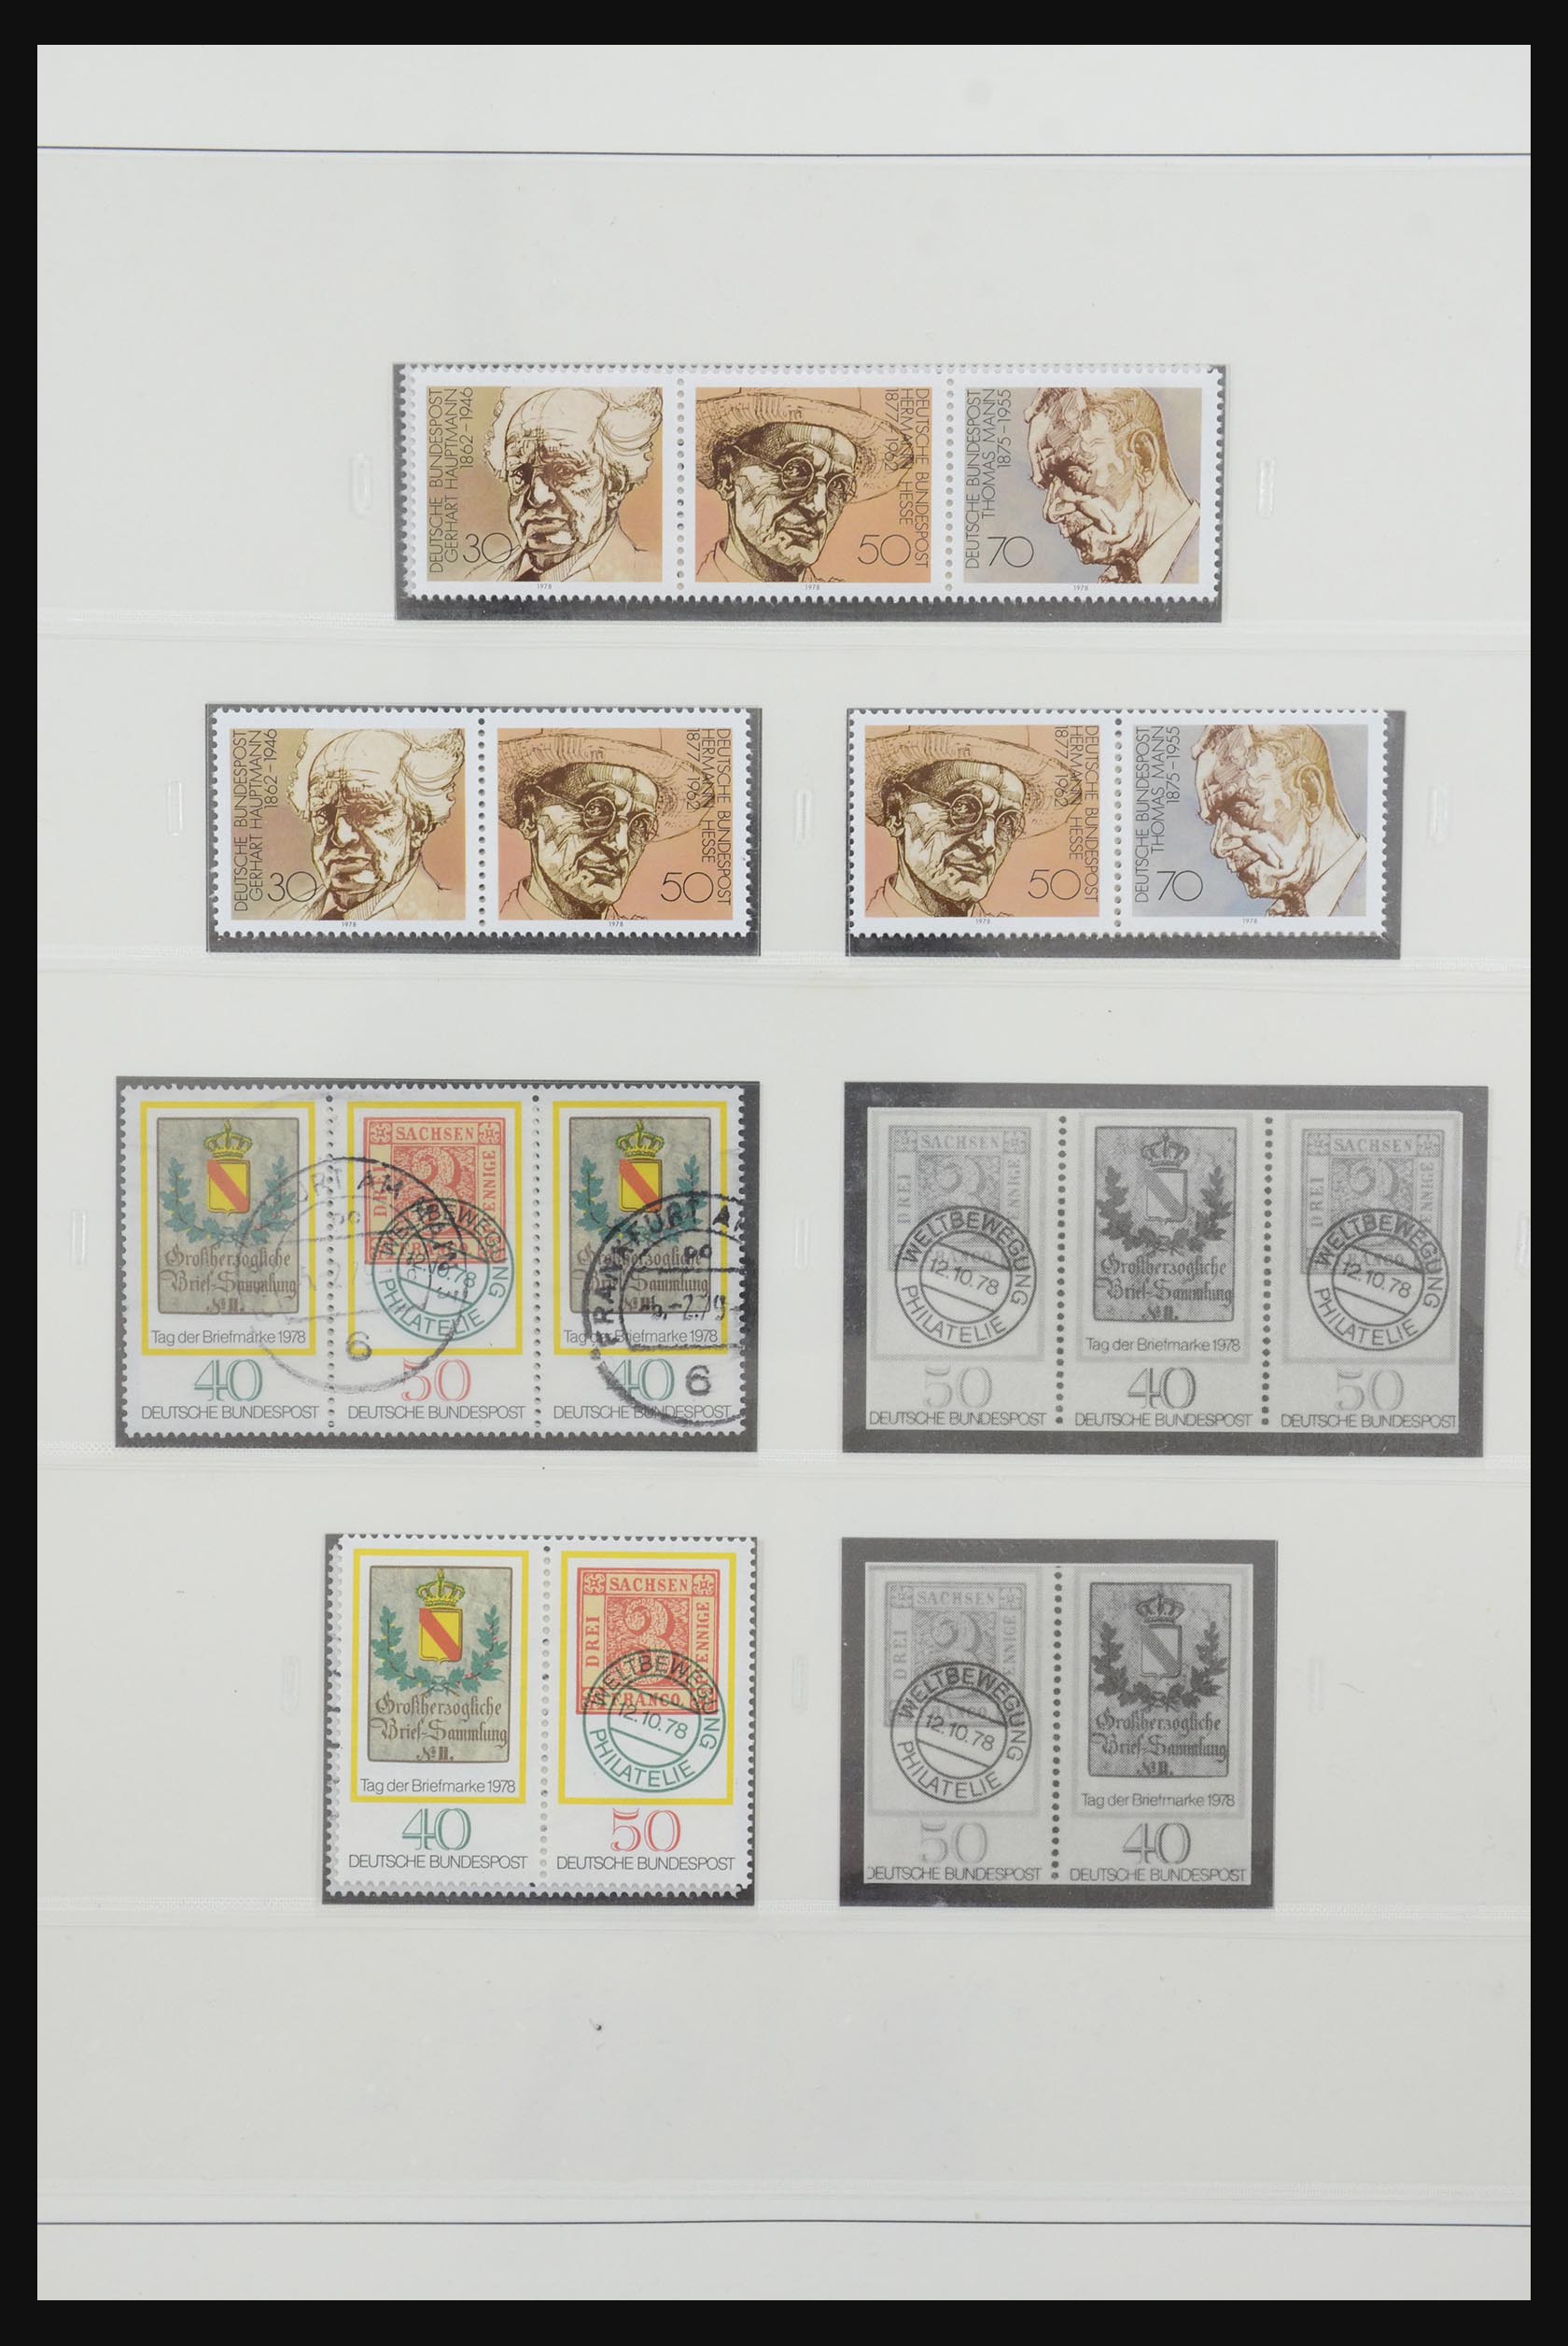 31842 058 - 31842 Bundespost combinations 1951-2003.